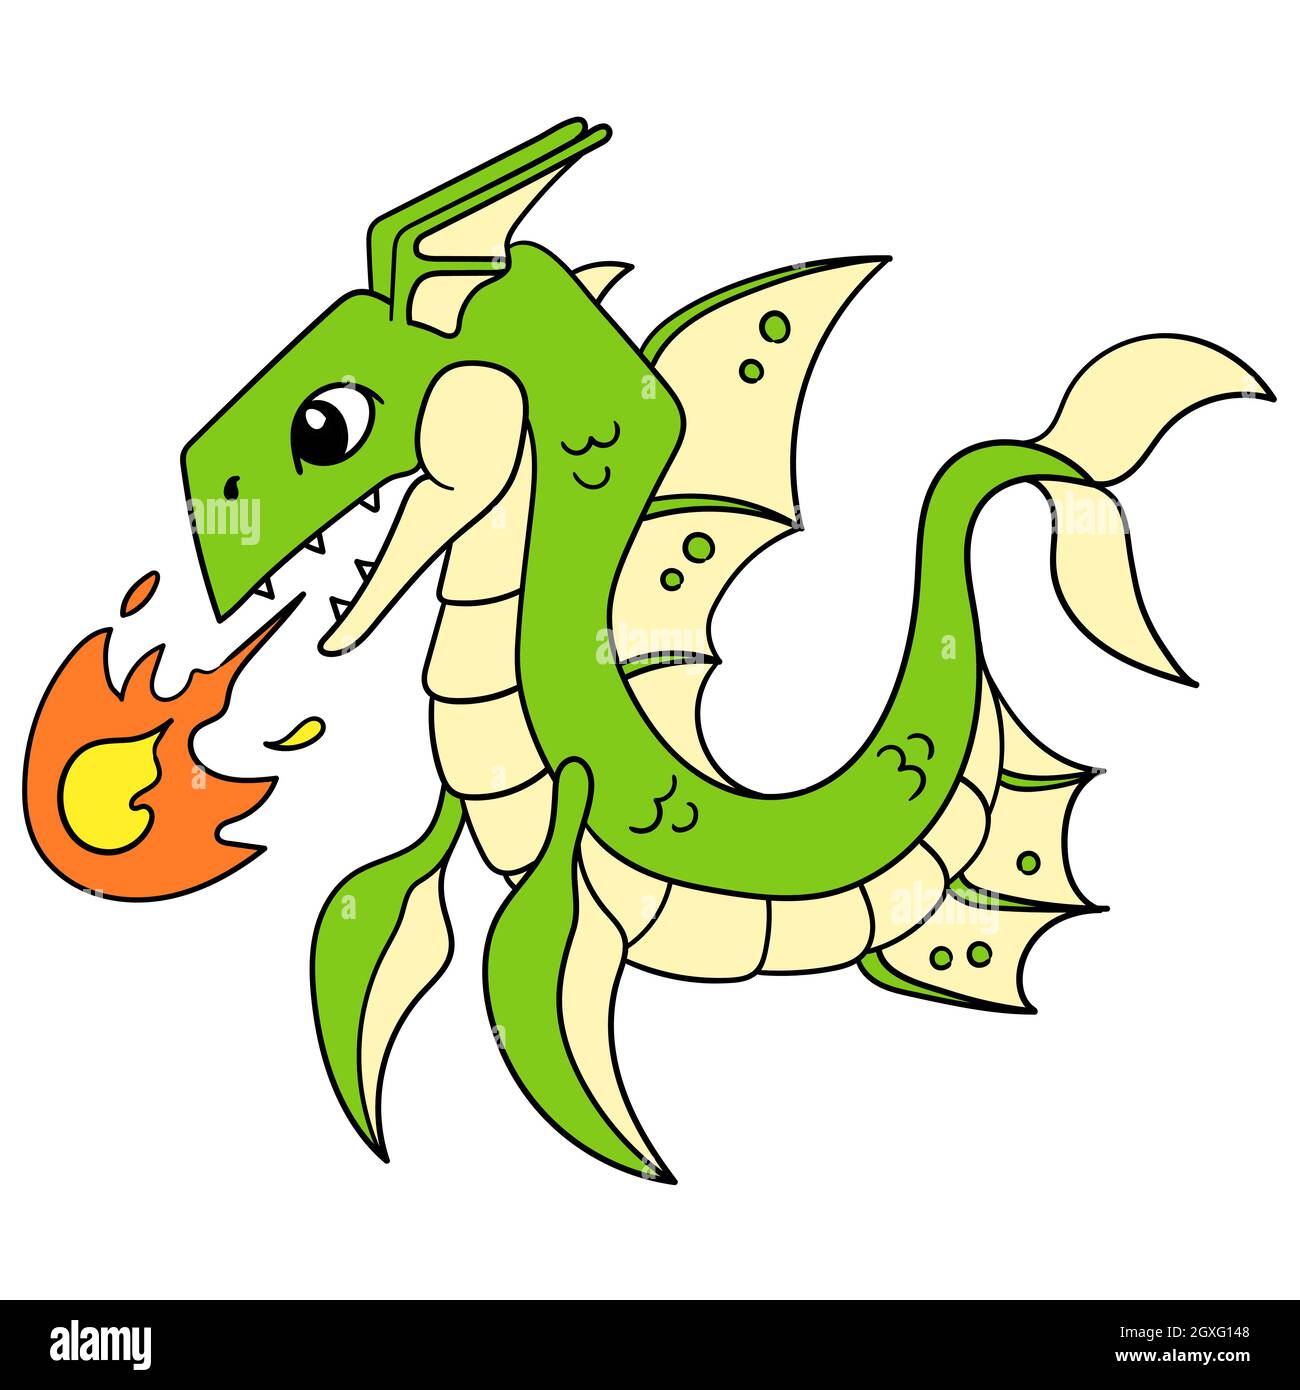 la bête mythologique du dragon vert a déclenché une boule de feu de sa capacité principale Illustration de Vecteur